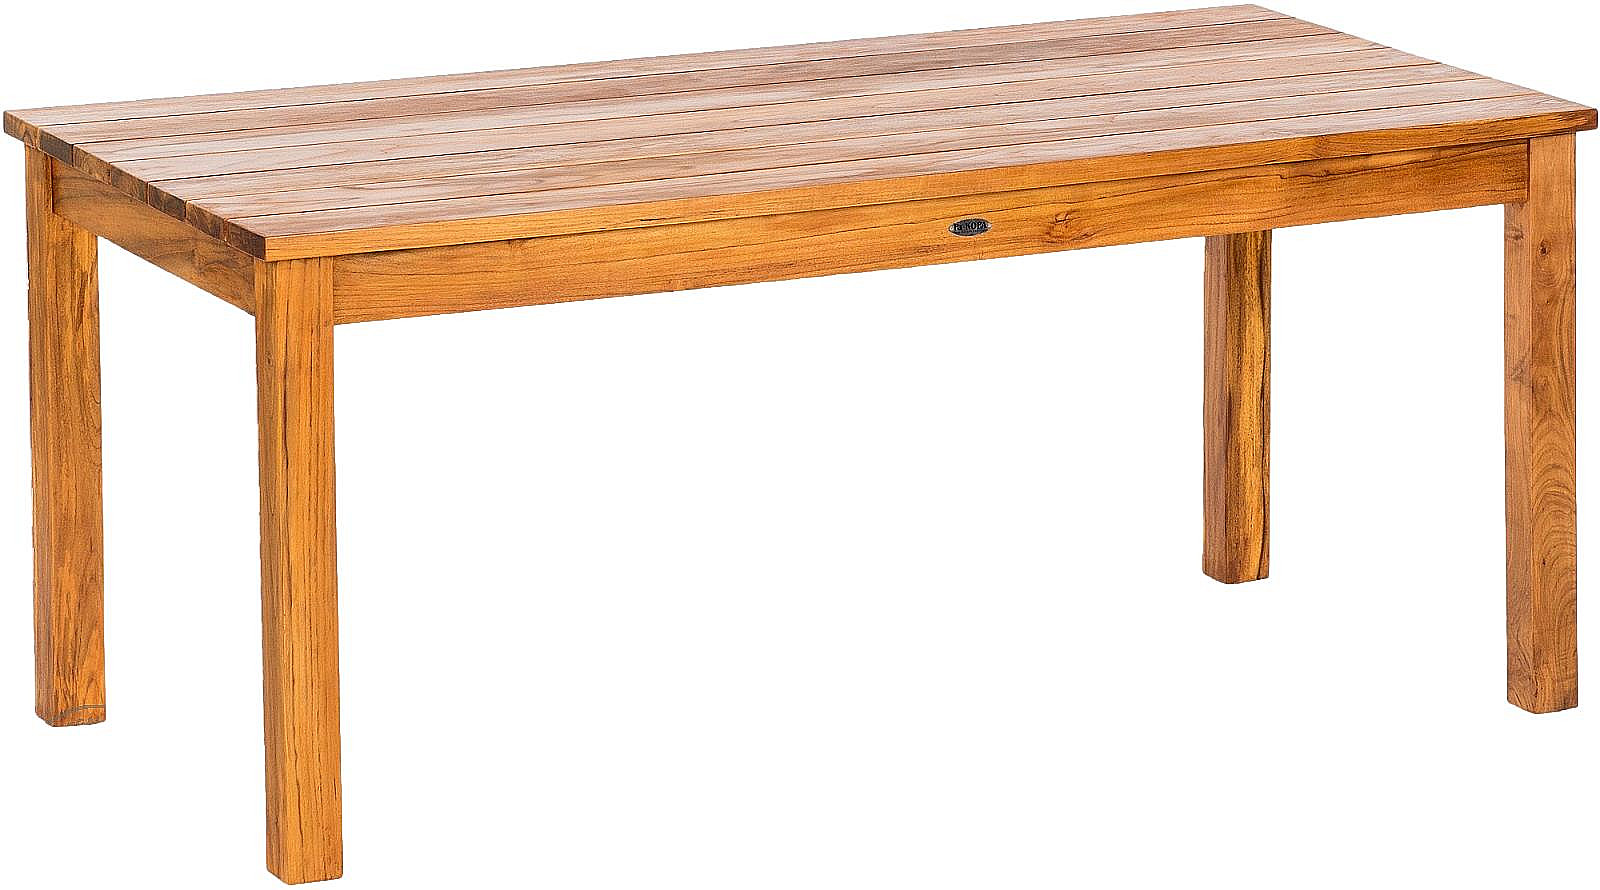 DEOKORK Záhradný teakový stôl GIOVANNI (rôzne dĺžky) 220x100 cm